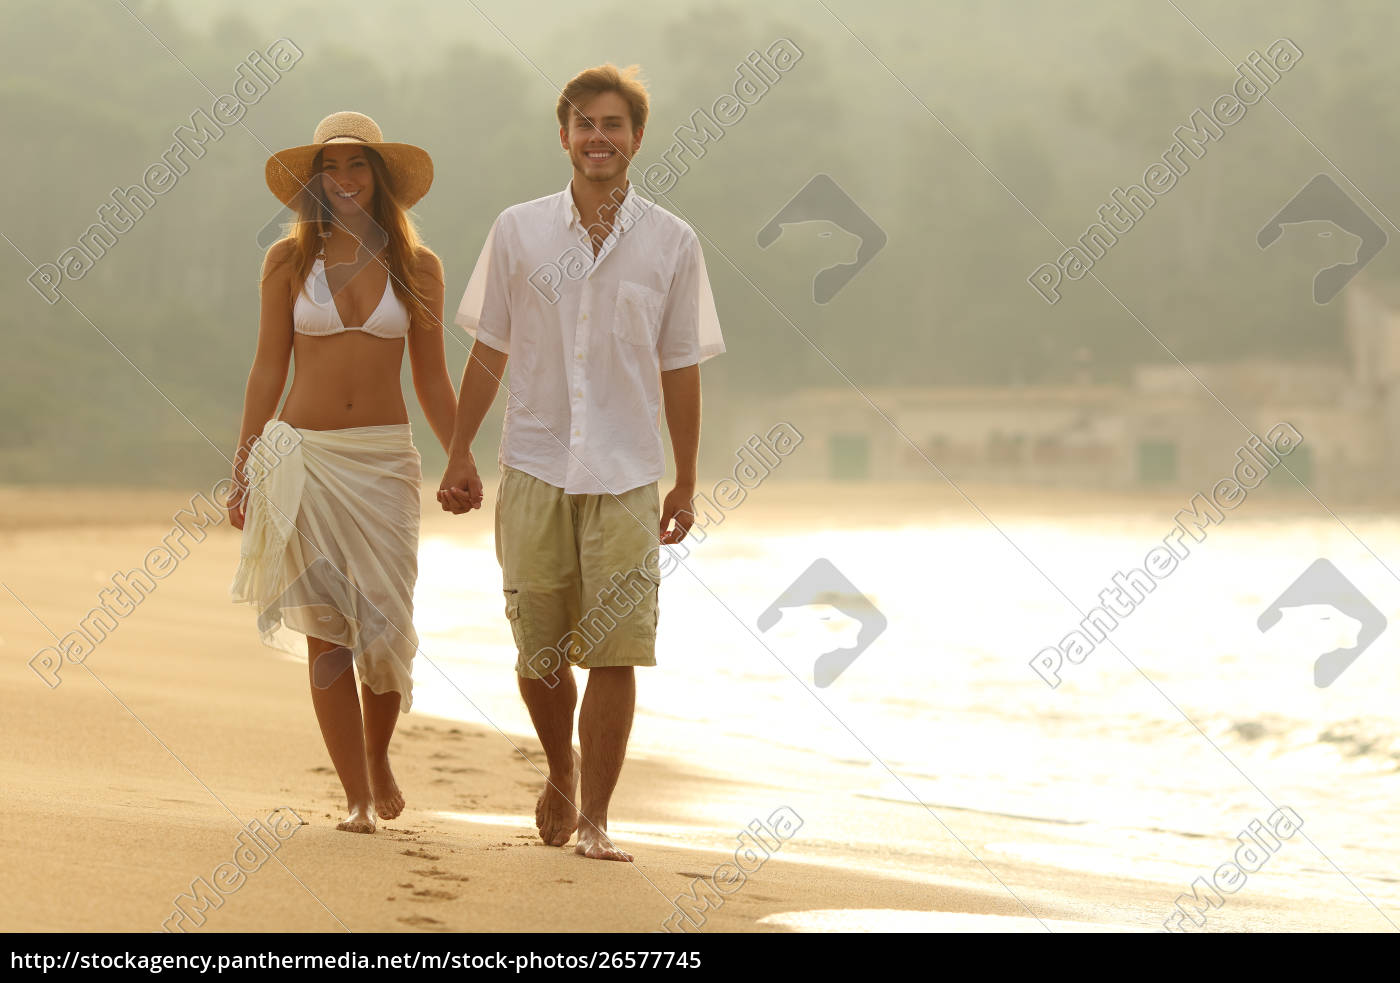 Gluckliches Paar Zu Fuss Am Strand Bei Sonnenuntergang Lizenzfreies Bild 26577745 Bildagentur Panthermedia